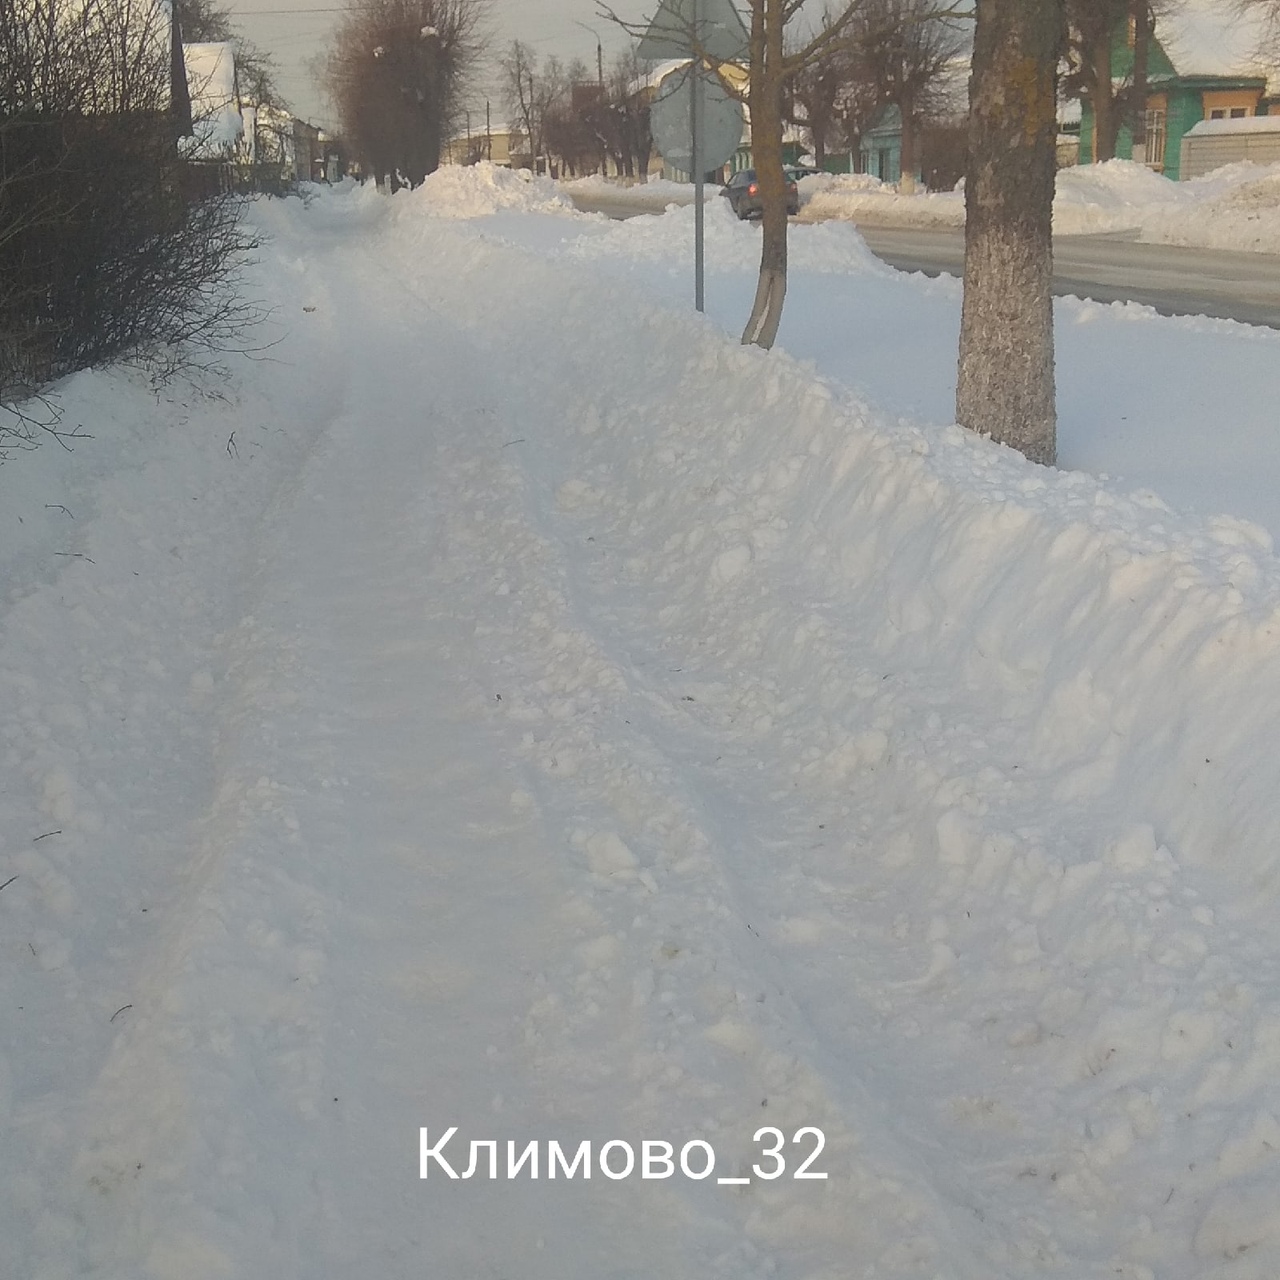 В Климово ищут тракториста, который «чистил» дороги с поднятым скребком